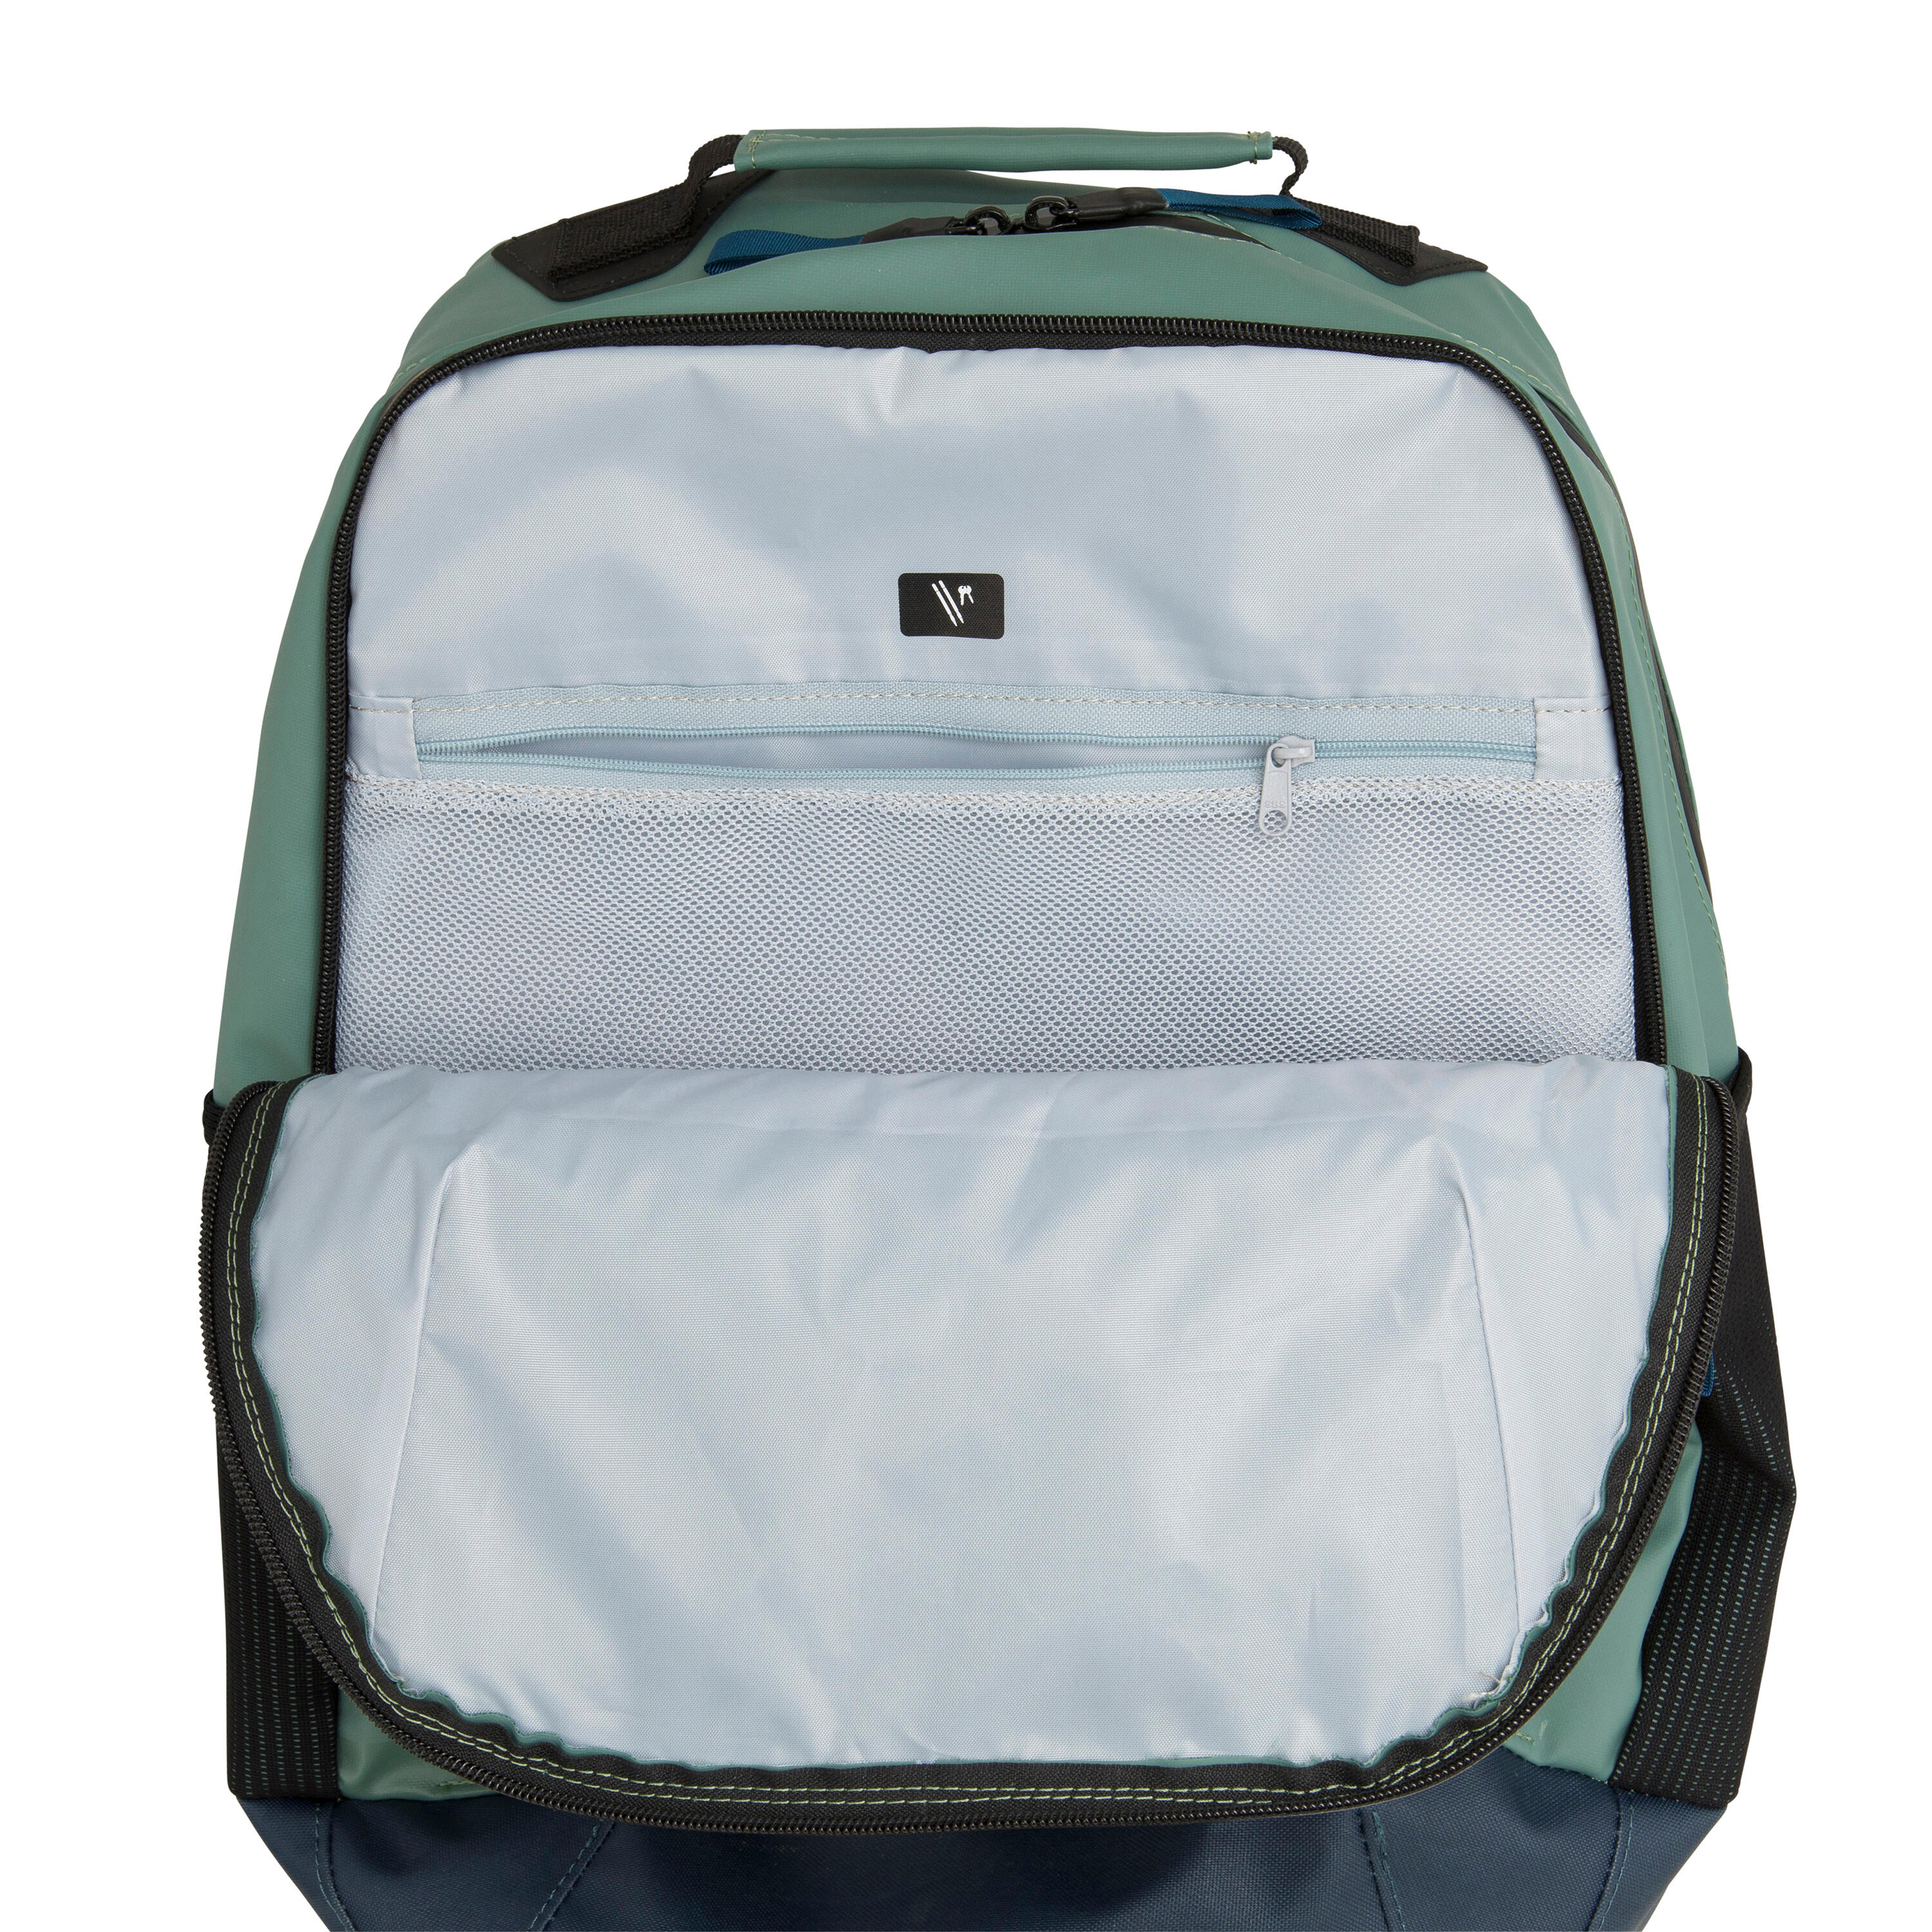 Waterproof backpack 25 litres - Kaki 11/11